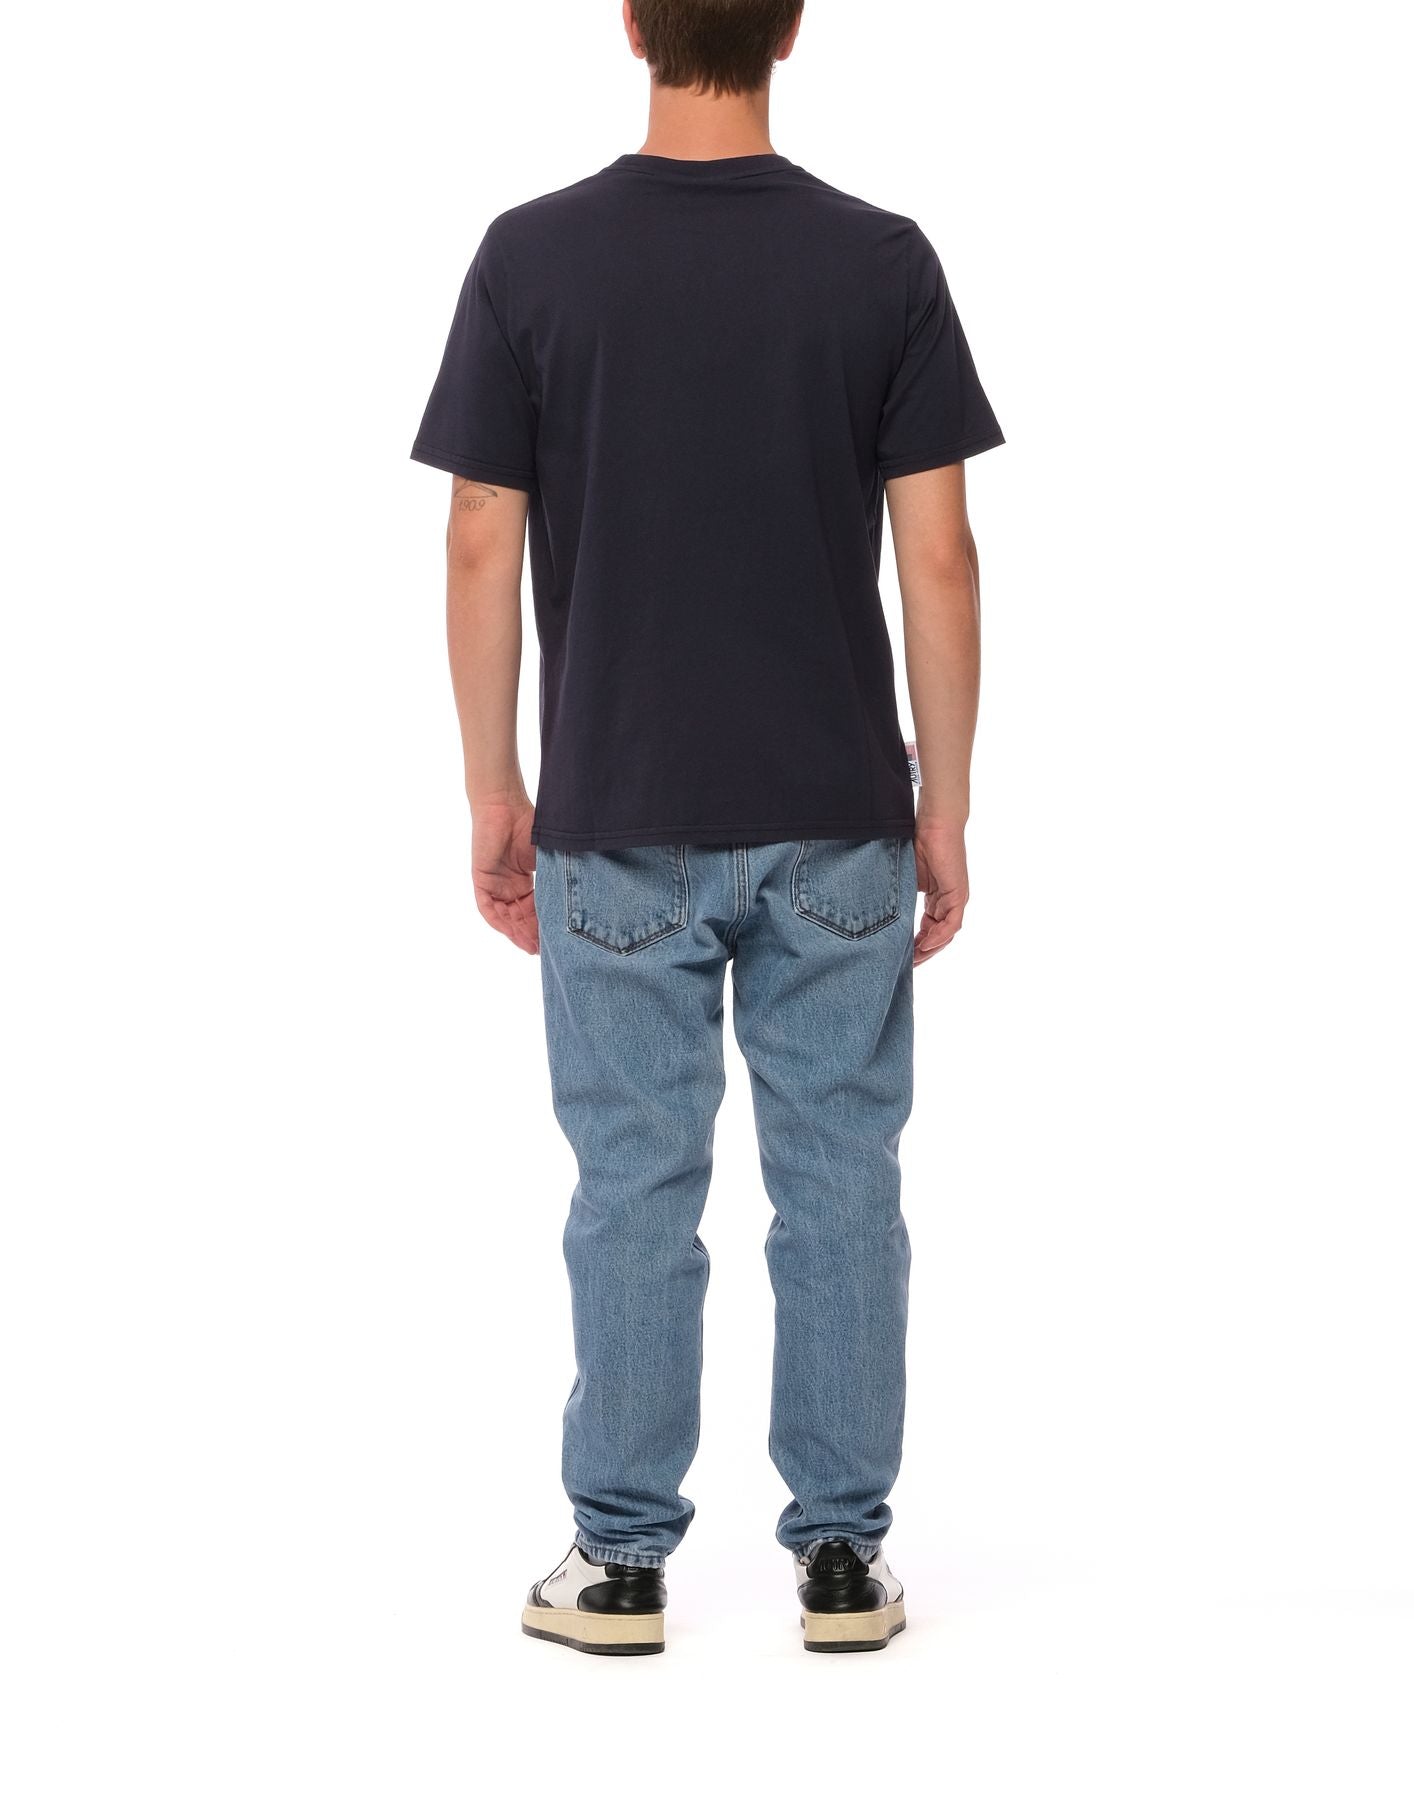 T-Shirt Man Tsim 401b Blau Autry